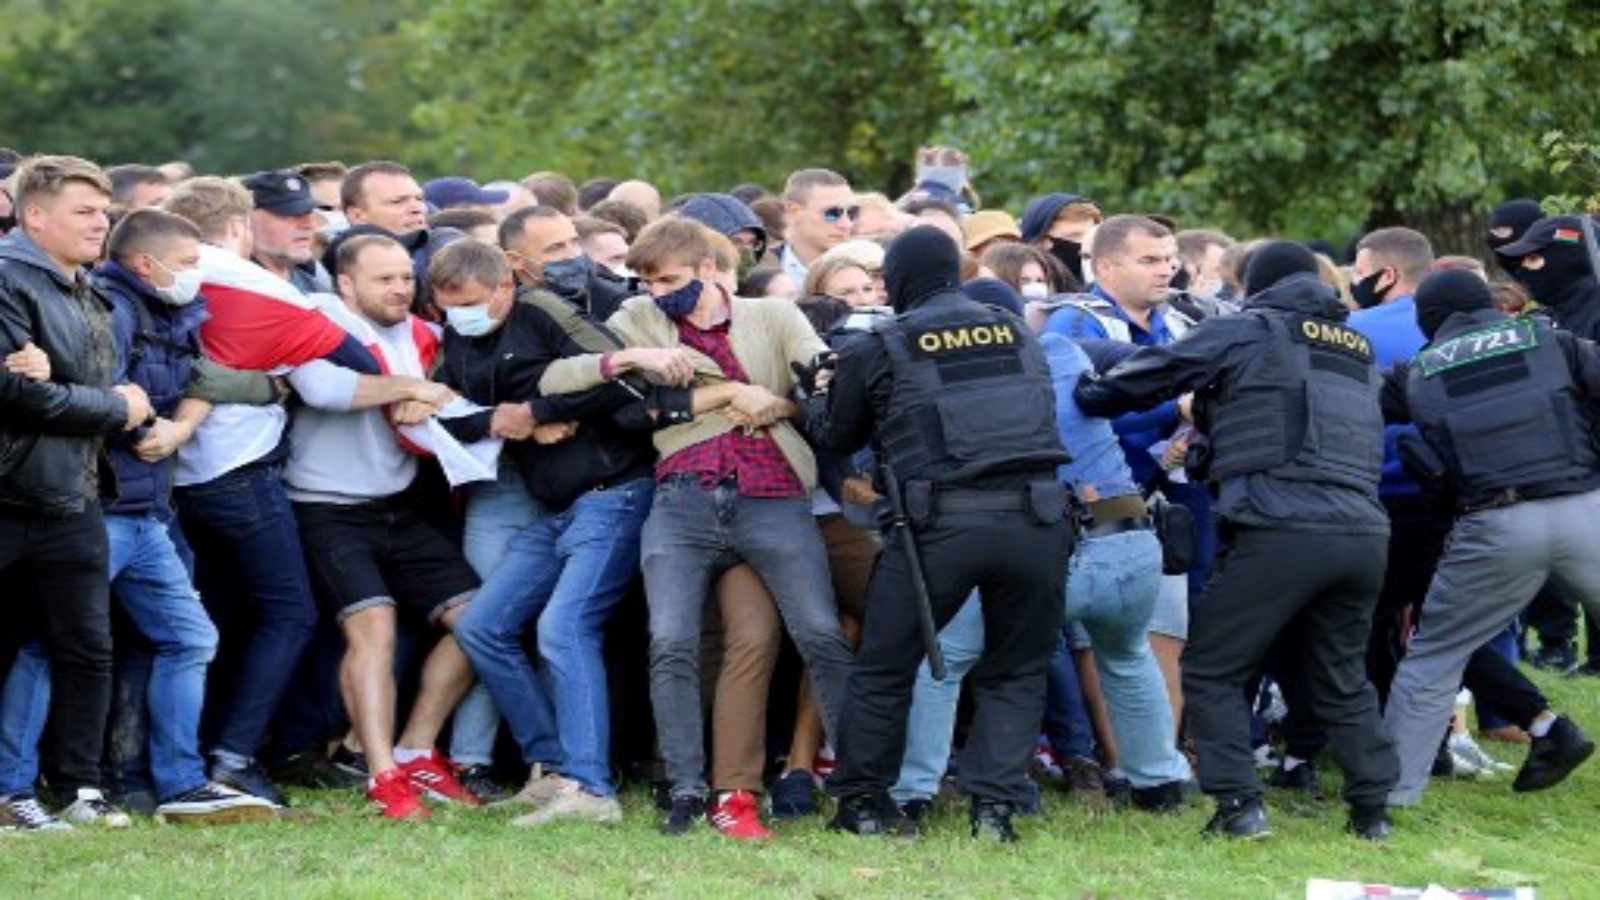 ضباط إنفاذ القانون يعتقلون المتظاهرين خلال مسيرة احتجاجية على نتائج الانتخابات الرئاسية في مينسك في 13 سبتمبر 2020.